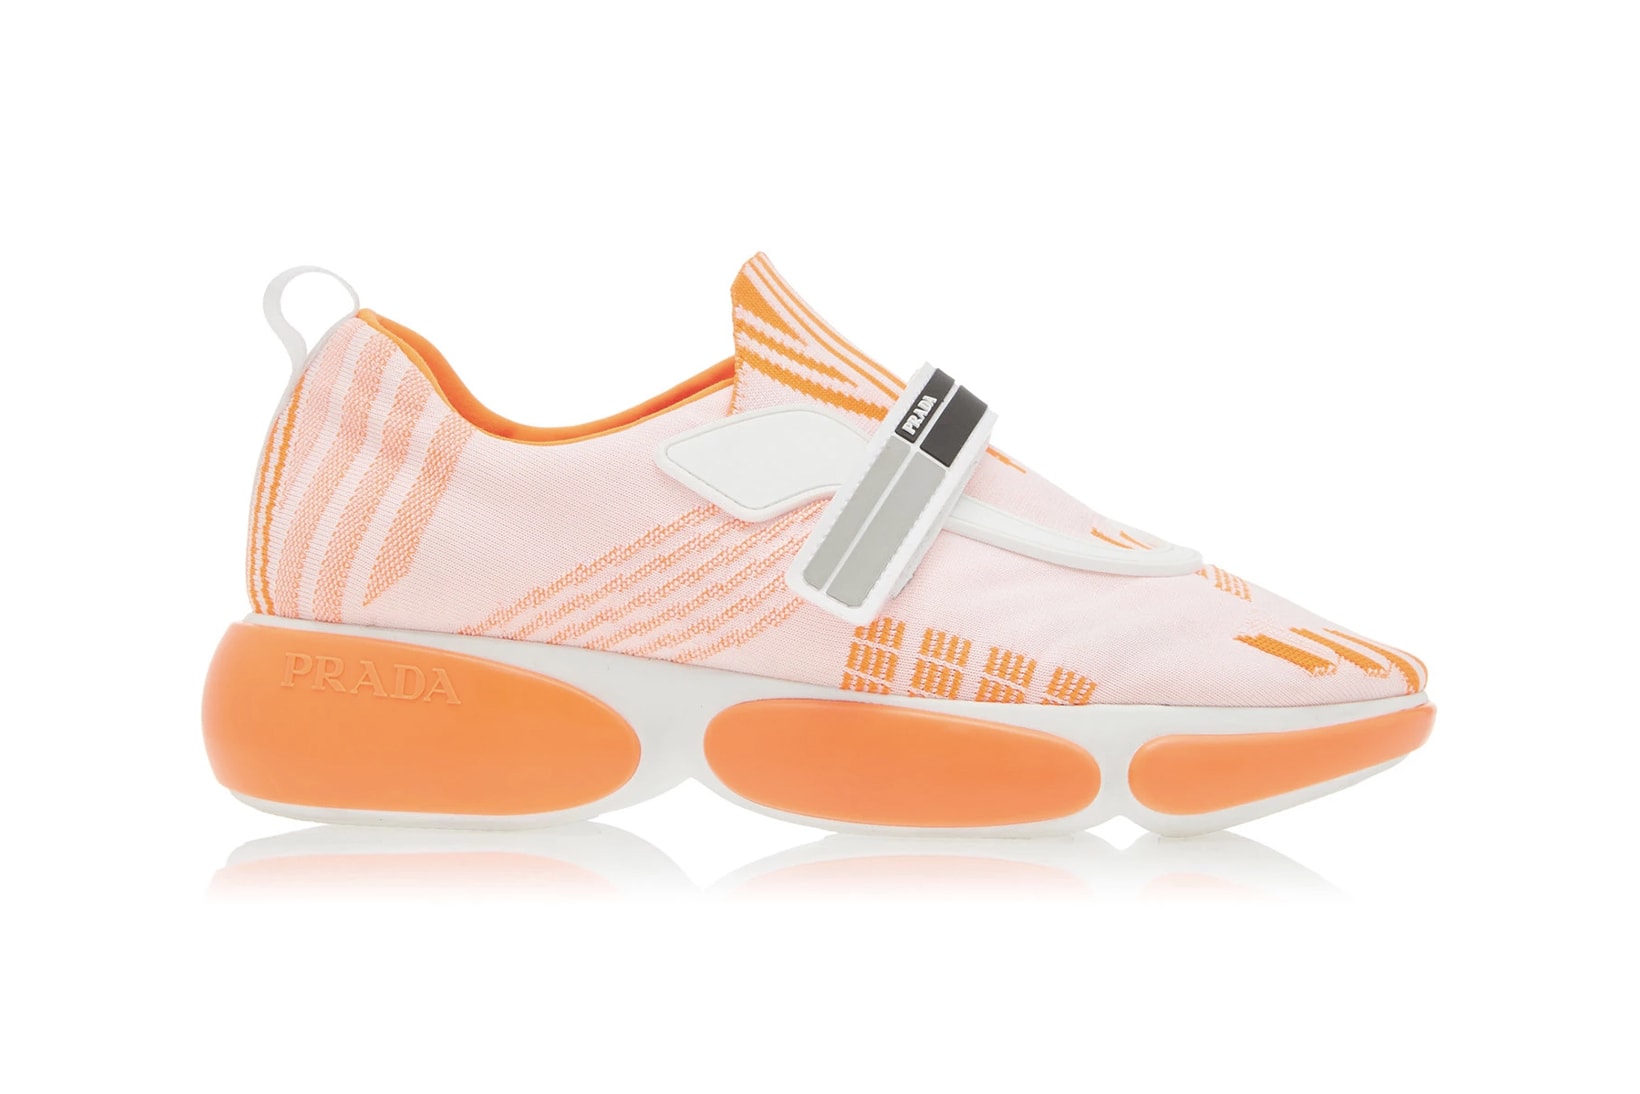 Prada Allacciate Tronchetti Sneakers Trainers Boots Neon Pink Green Orange Black White Sneakerboot Futuristic Fall/Winter 2018 Pre Order Where to Buy Moda Operandi